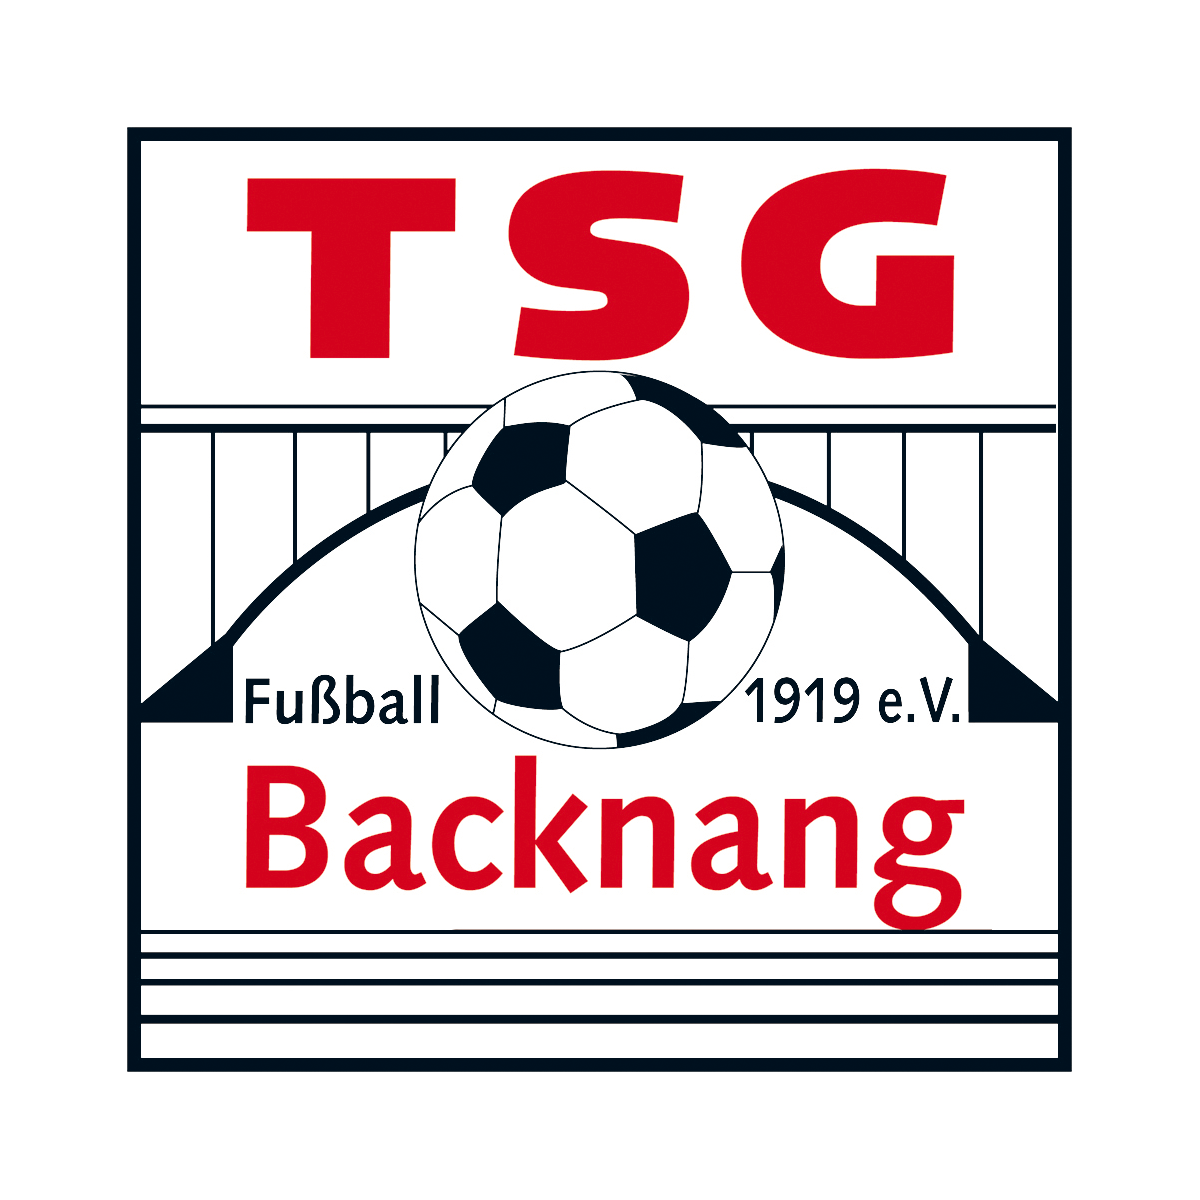 uhleague - TSG Backnang 1919